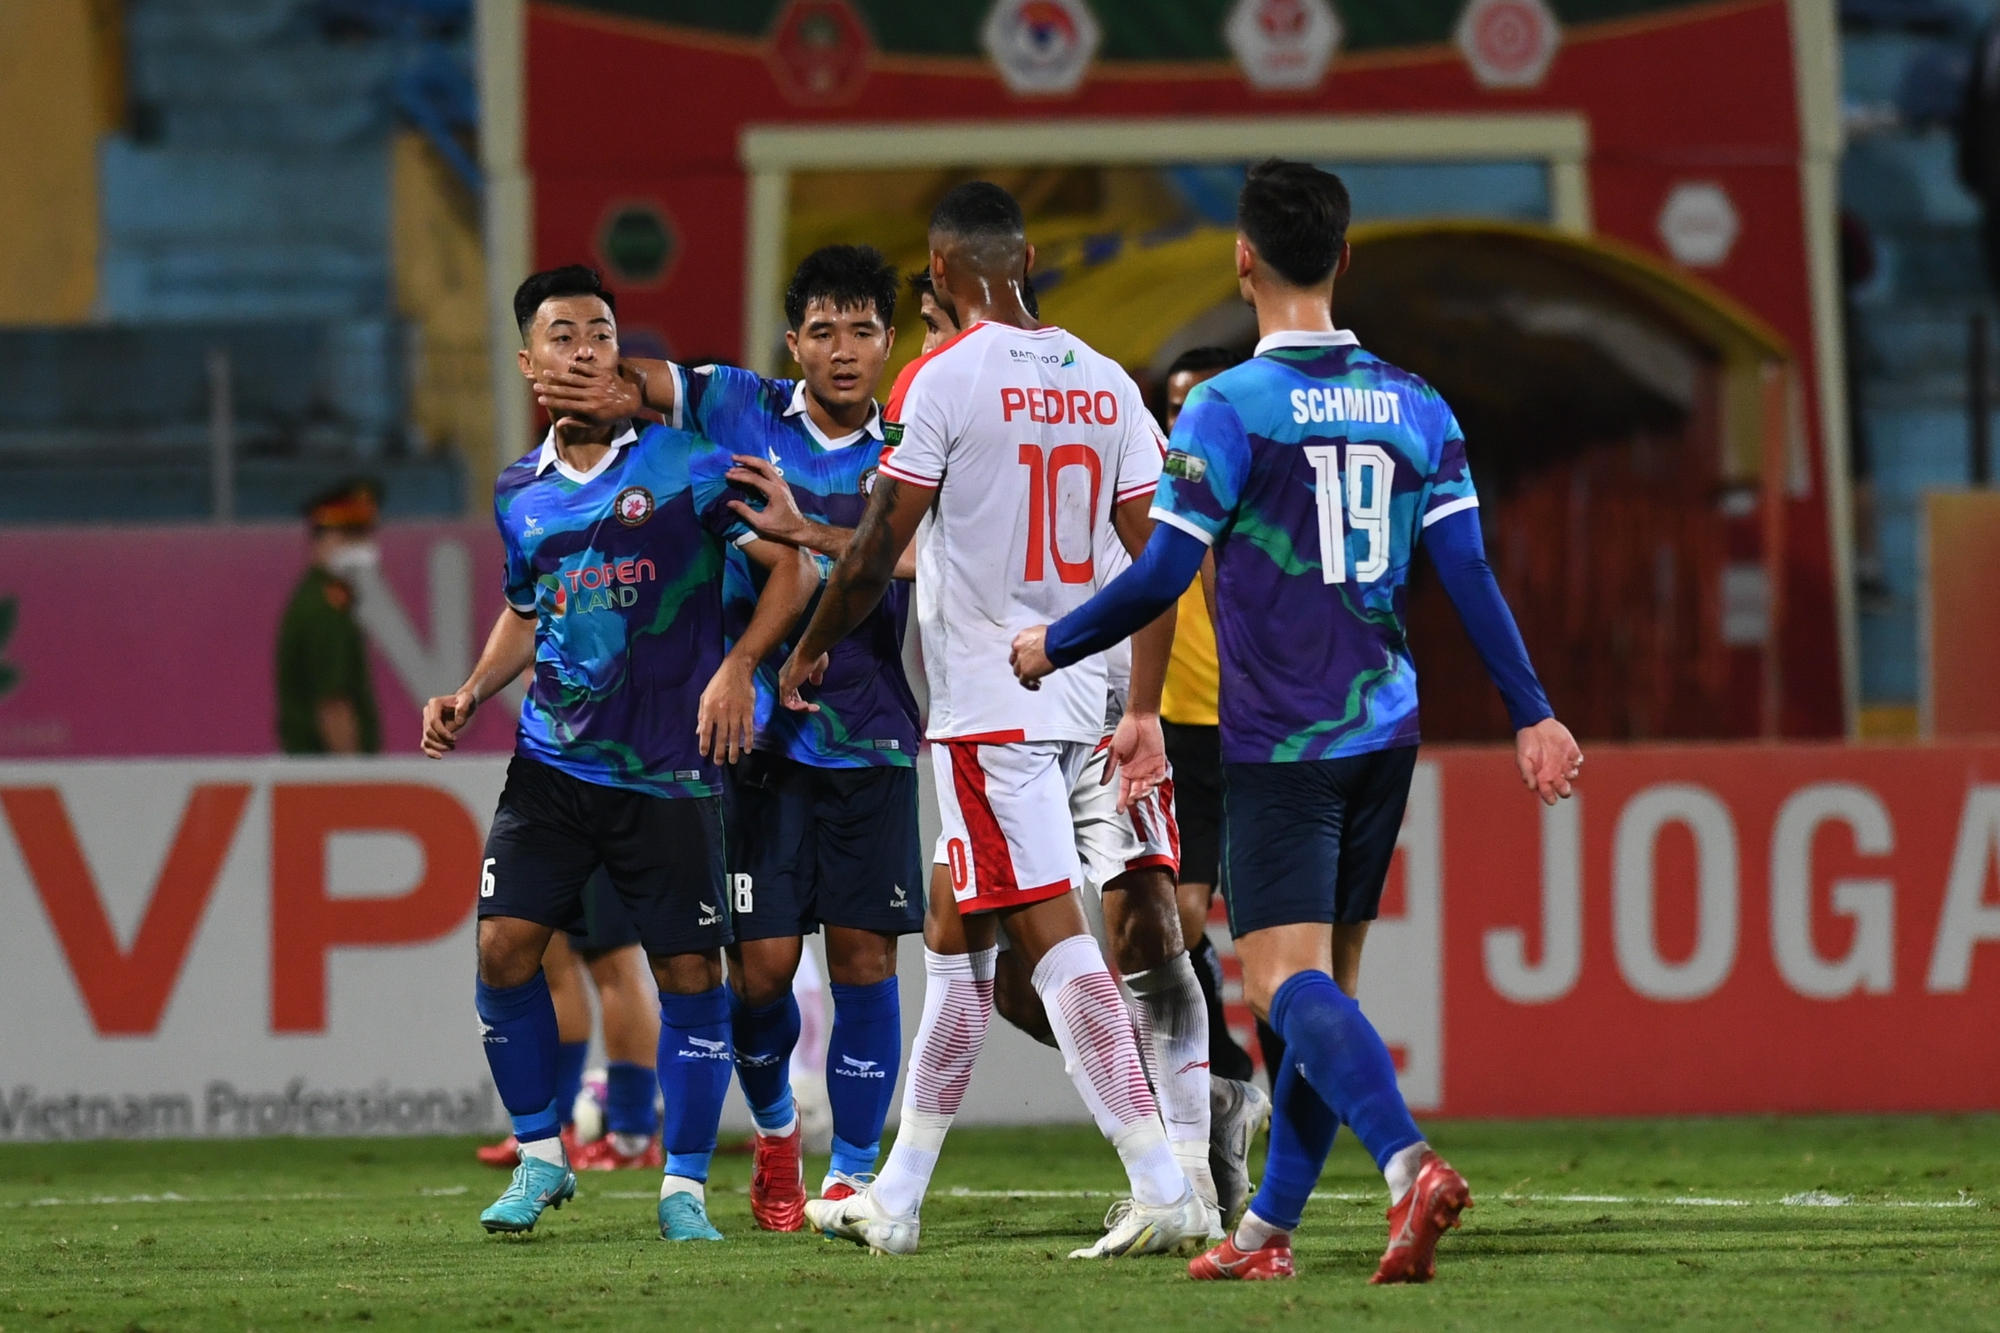 Đức Chinh hành động dứt khoát, ngăn chặn đồng đội gây hấn với cầu thủ Viettel FC - Ảnh 2.